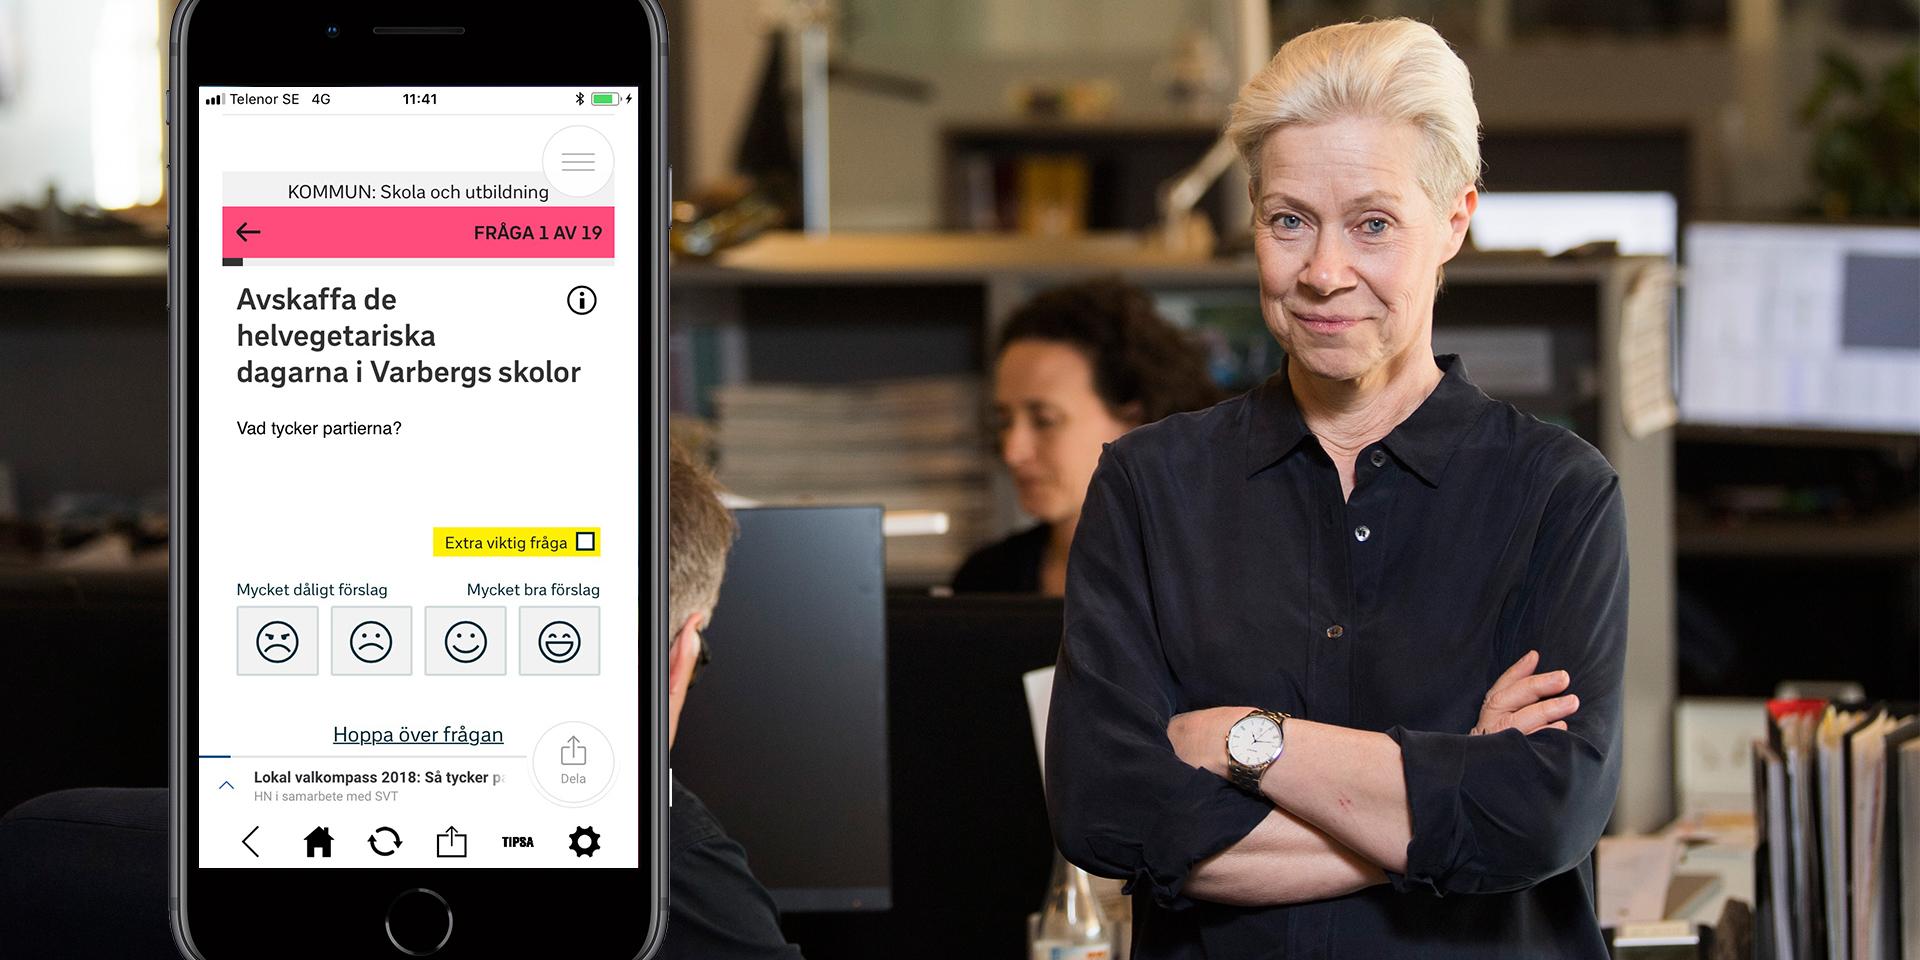 Valkompass på nätet. Hallands Nyheters chefredaktör Viveka Hedbjörk tror att den nya lokala valkompassen på hn.se blir en bra service för läsarna inför höstens val - inte minst på det lokala planet.